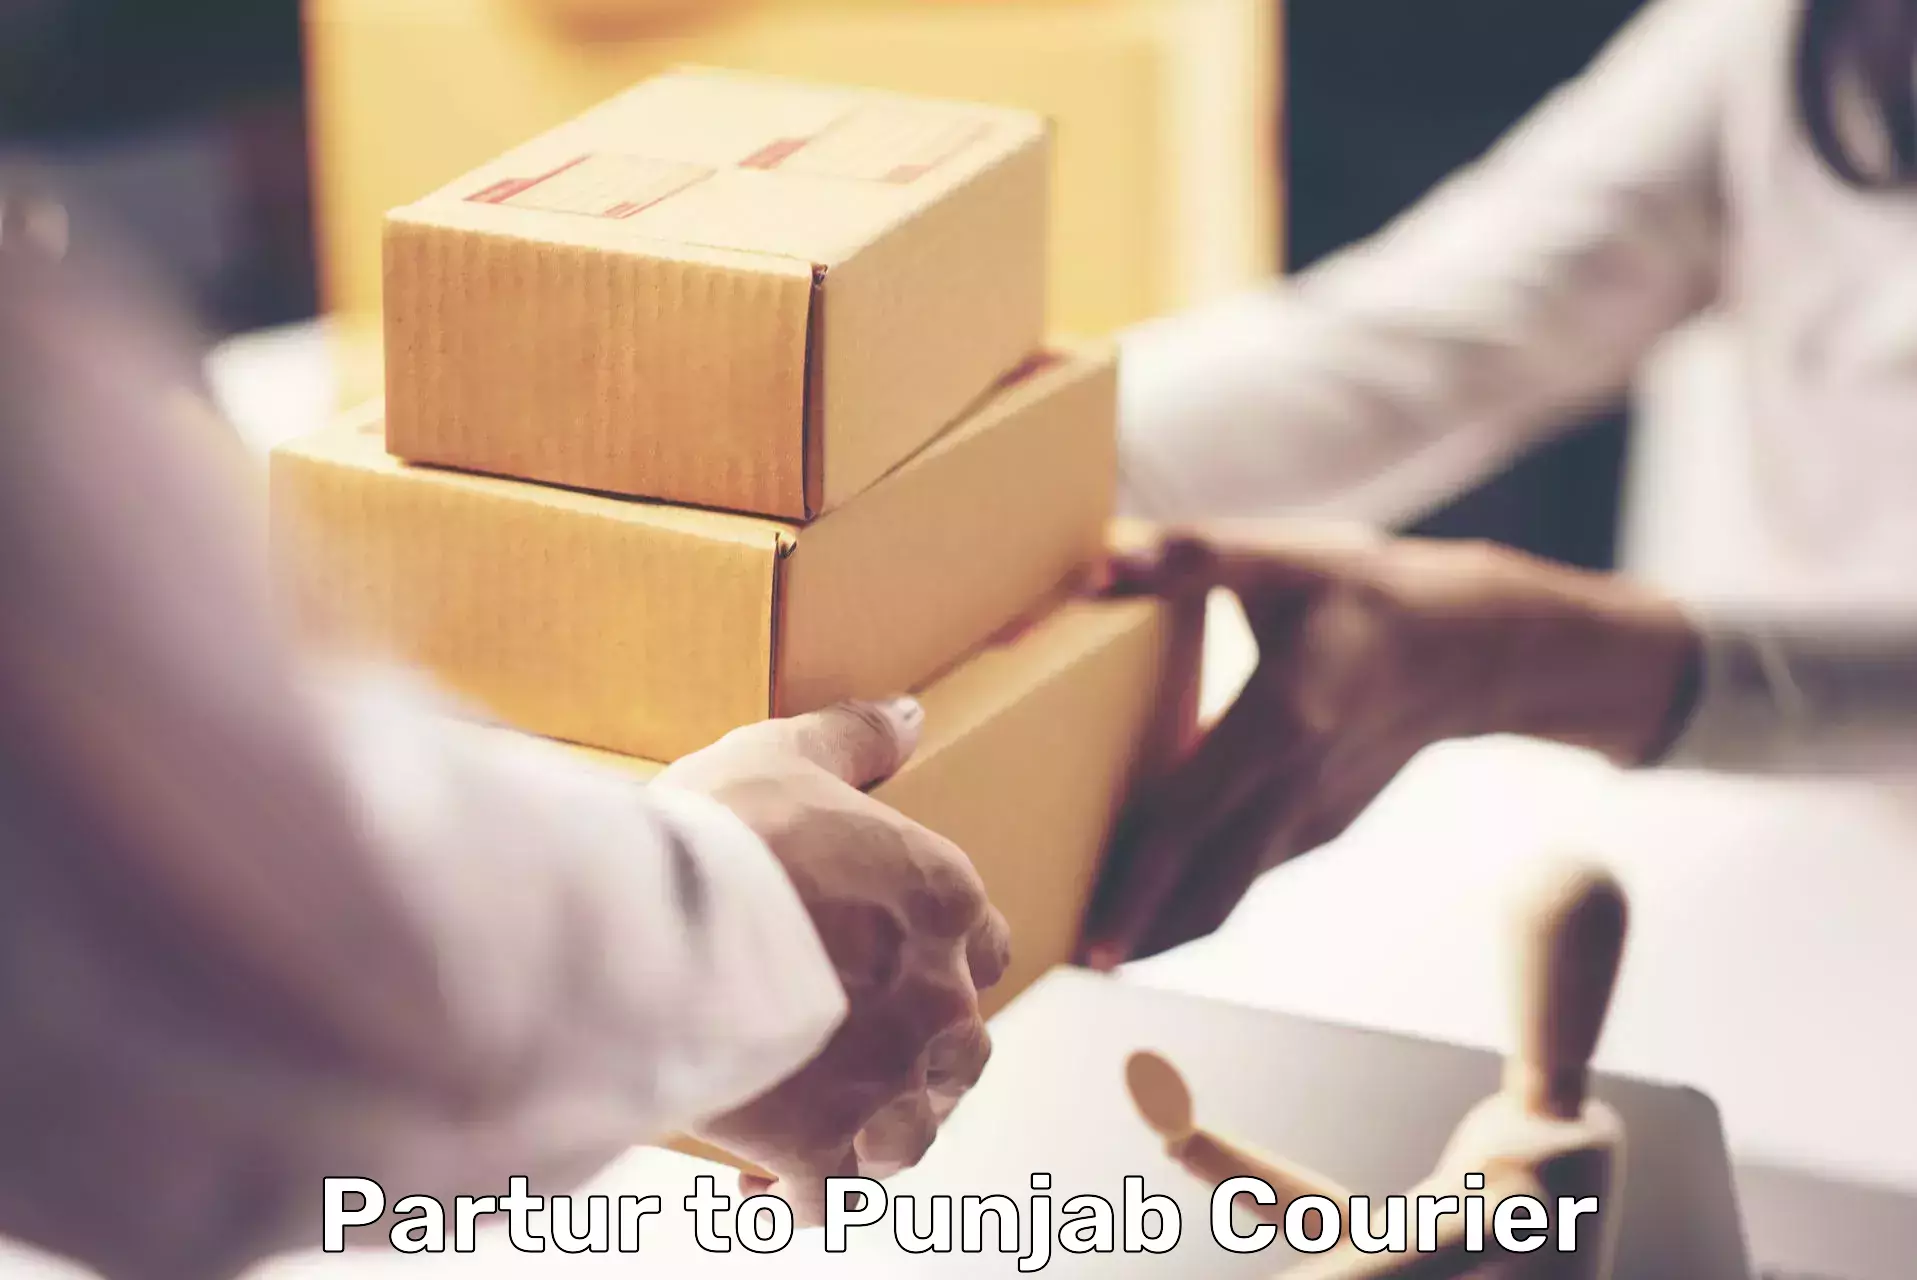 Efficient logistics management Partur to Punjab